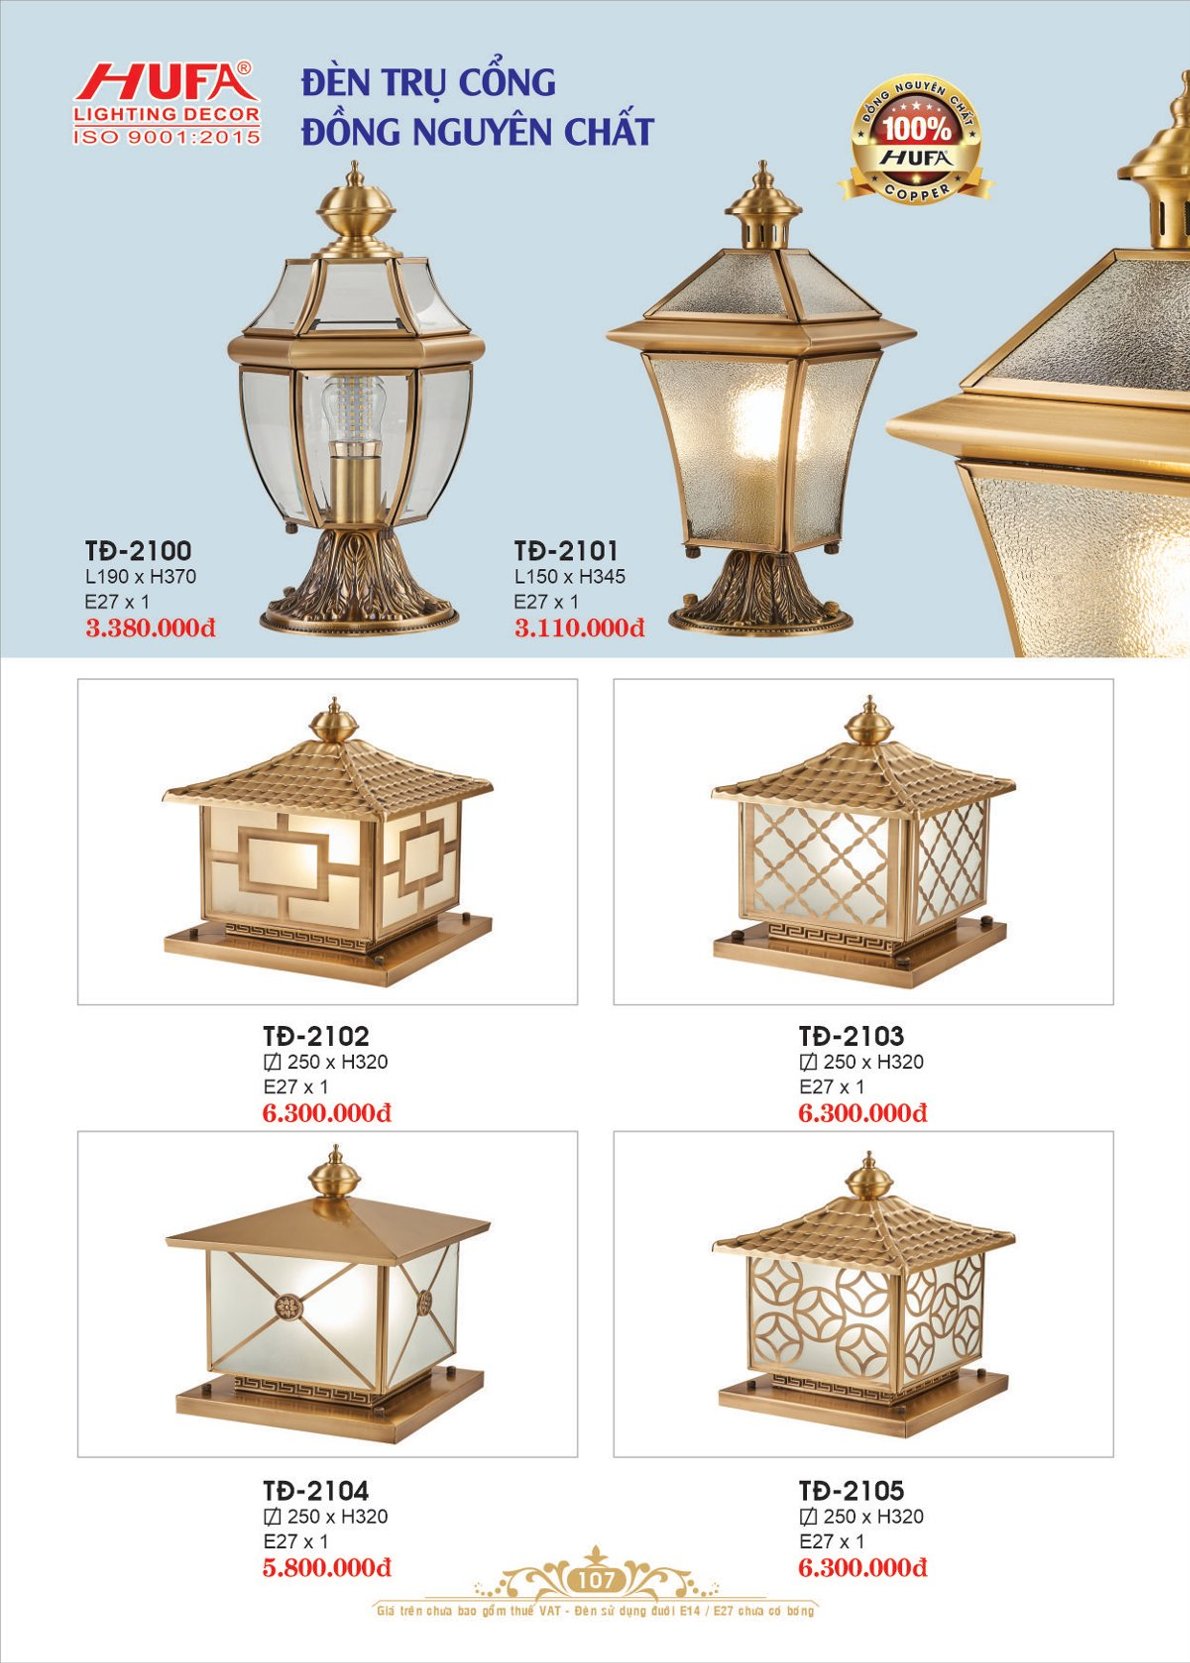 đèn trụ cổng đồng, đèn cổng, đèn trang trí Hufa TĐ 2105, đèn trang trí cao cấp, đèn trang trí, hufa